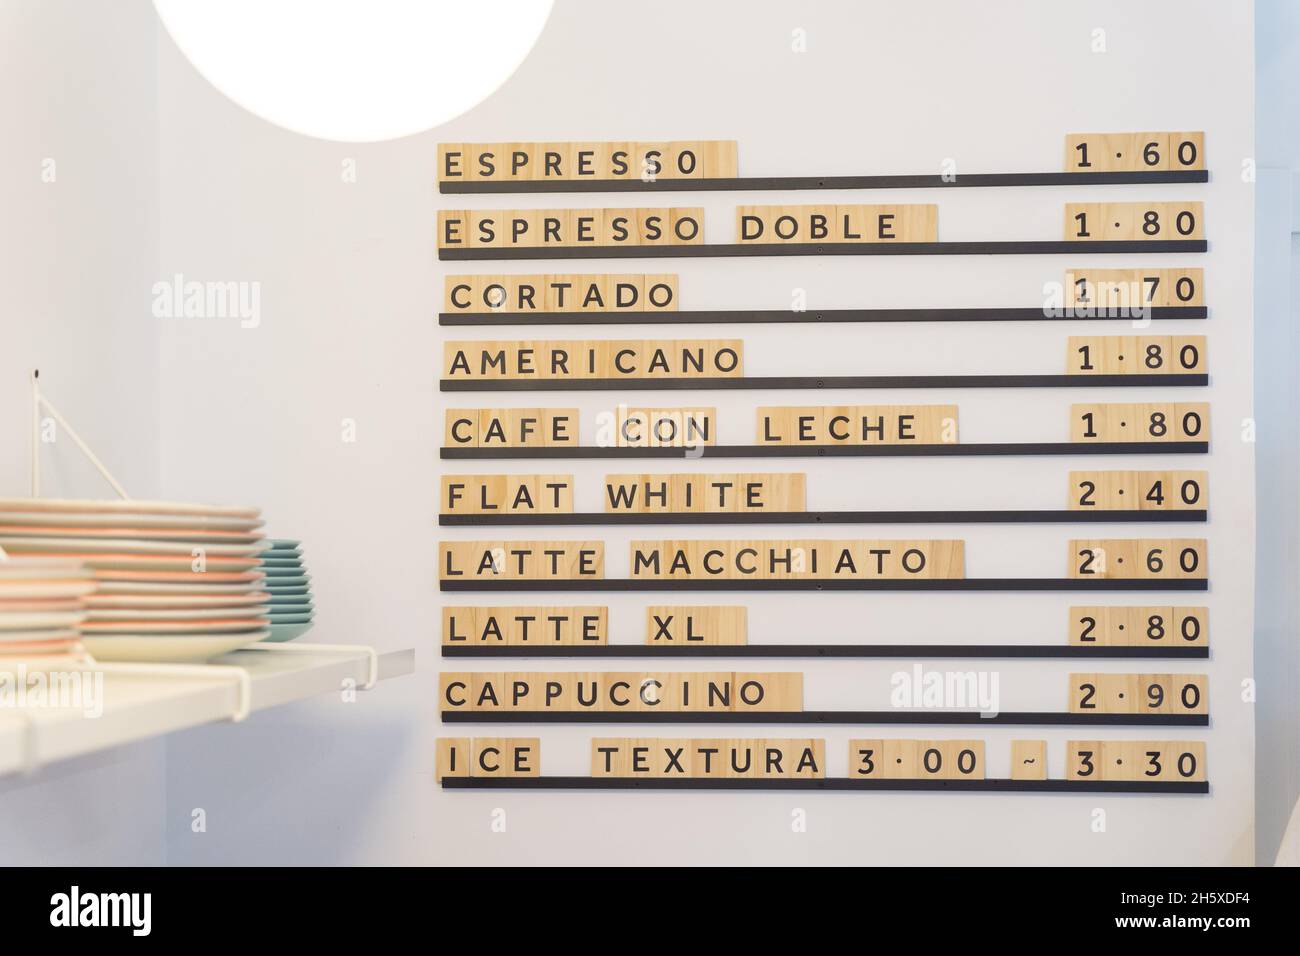 Menu avec différentes boissons au café et prix sur le mur blanc près du comptoir avec vaisselle dans un café moderne et lumineux Banque D'Images